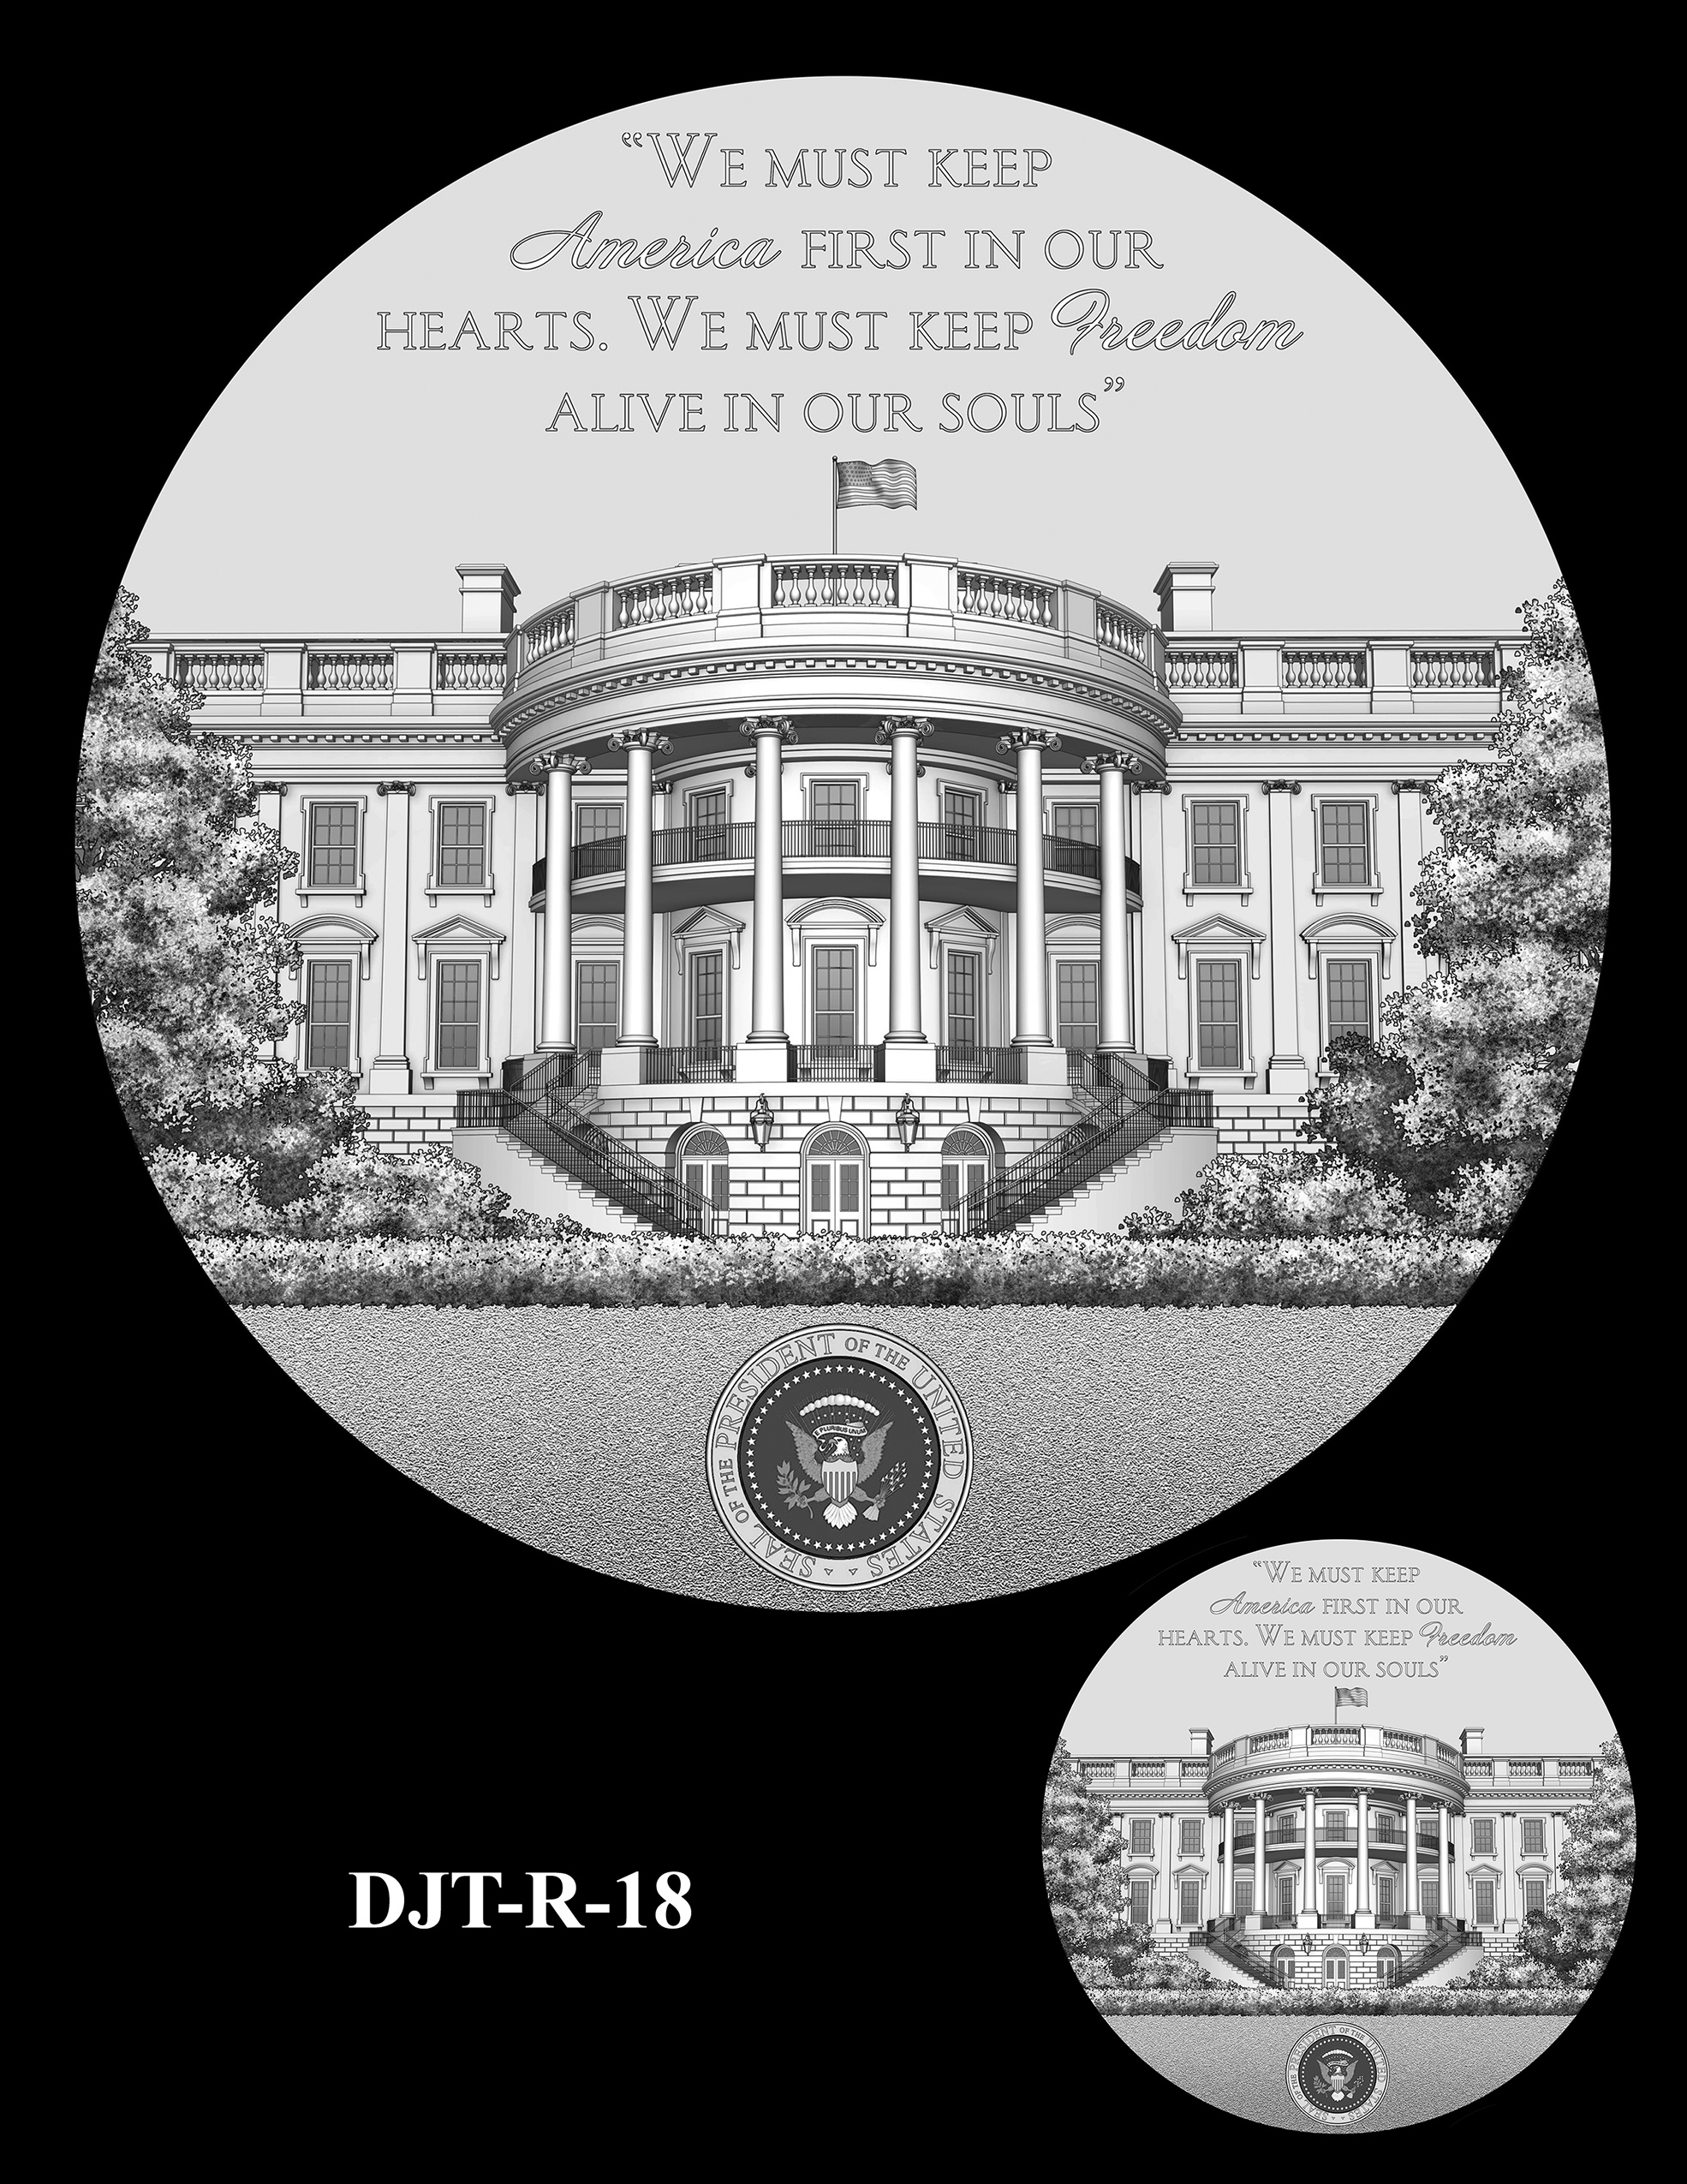 DJT-R-18 -- Donald J. Trump Presidential Medal